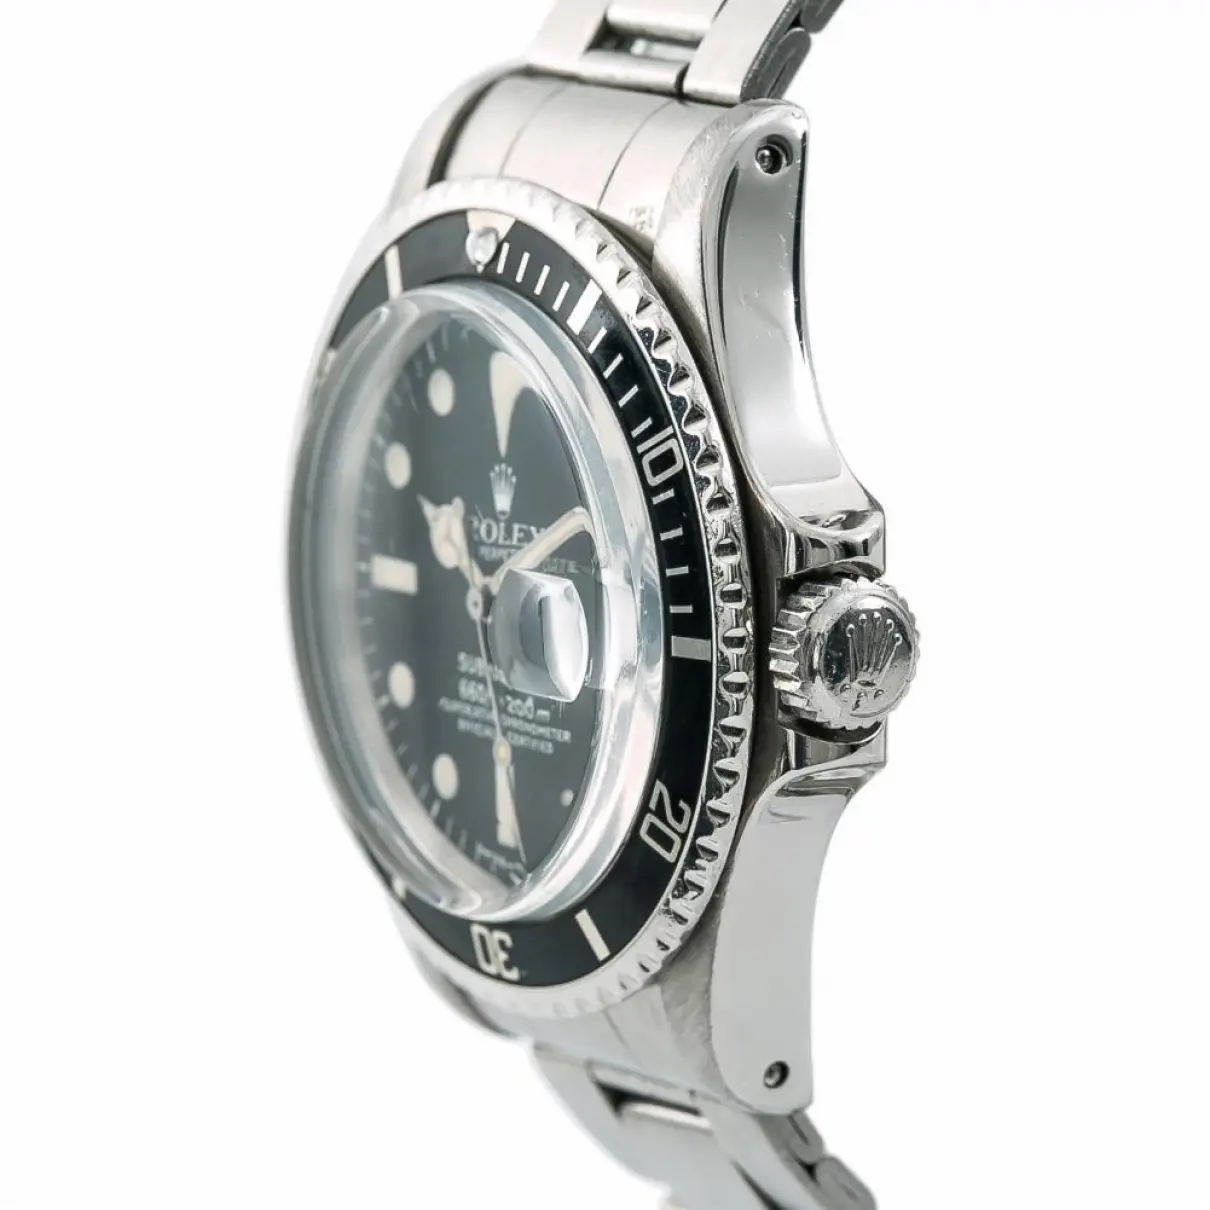 Submariner watch Rolex - Vintage